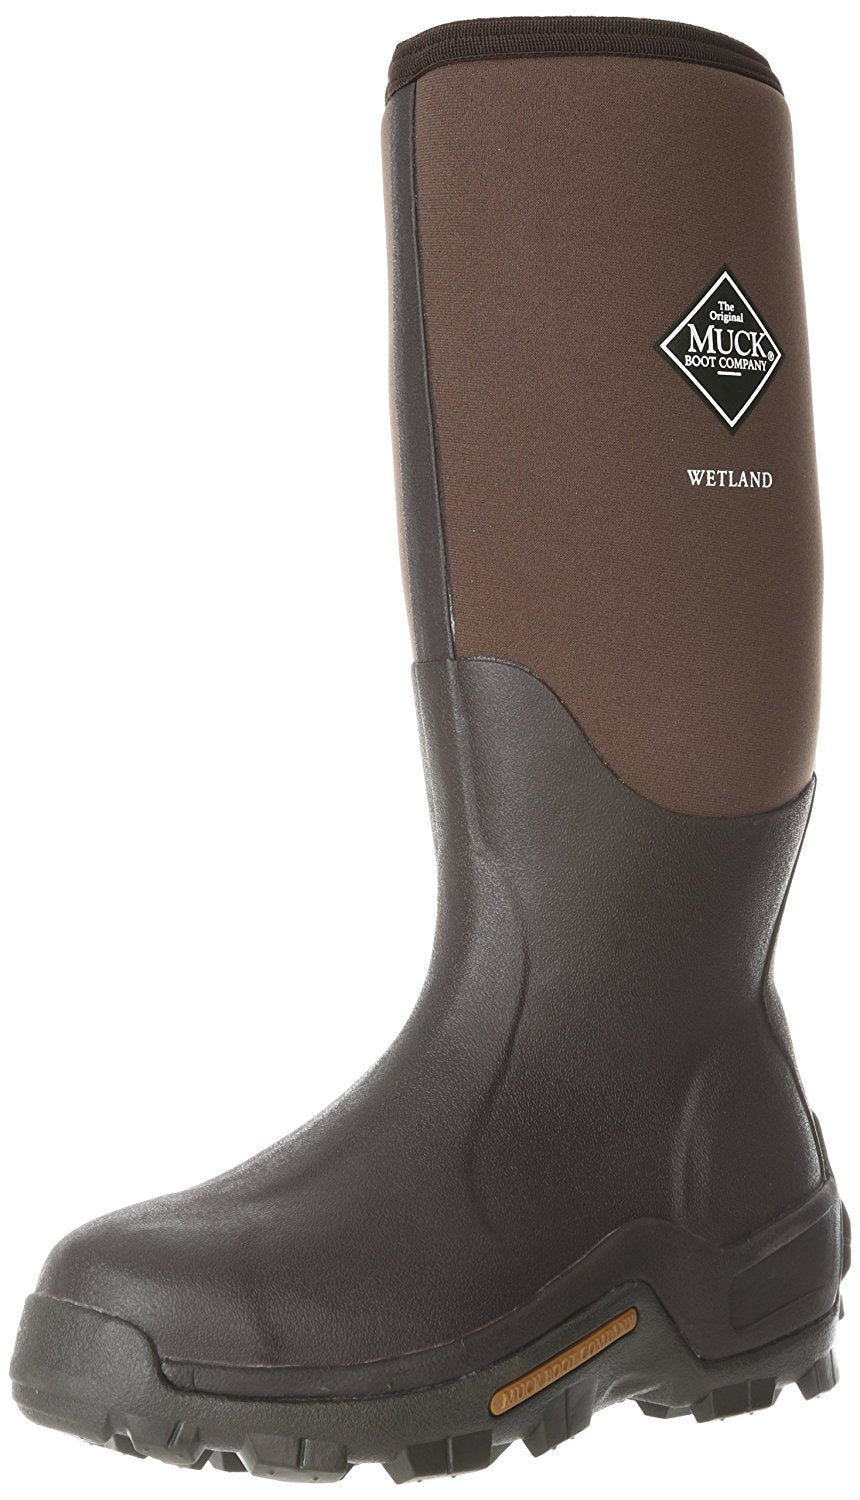 The Original Muck Boot WET998K-11 Wetland Men's Boots, 11, Brown